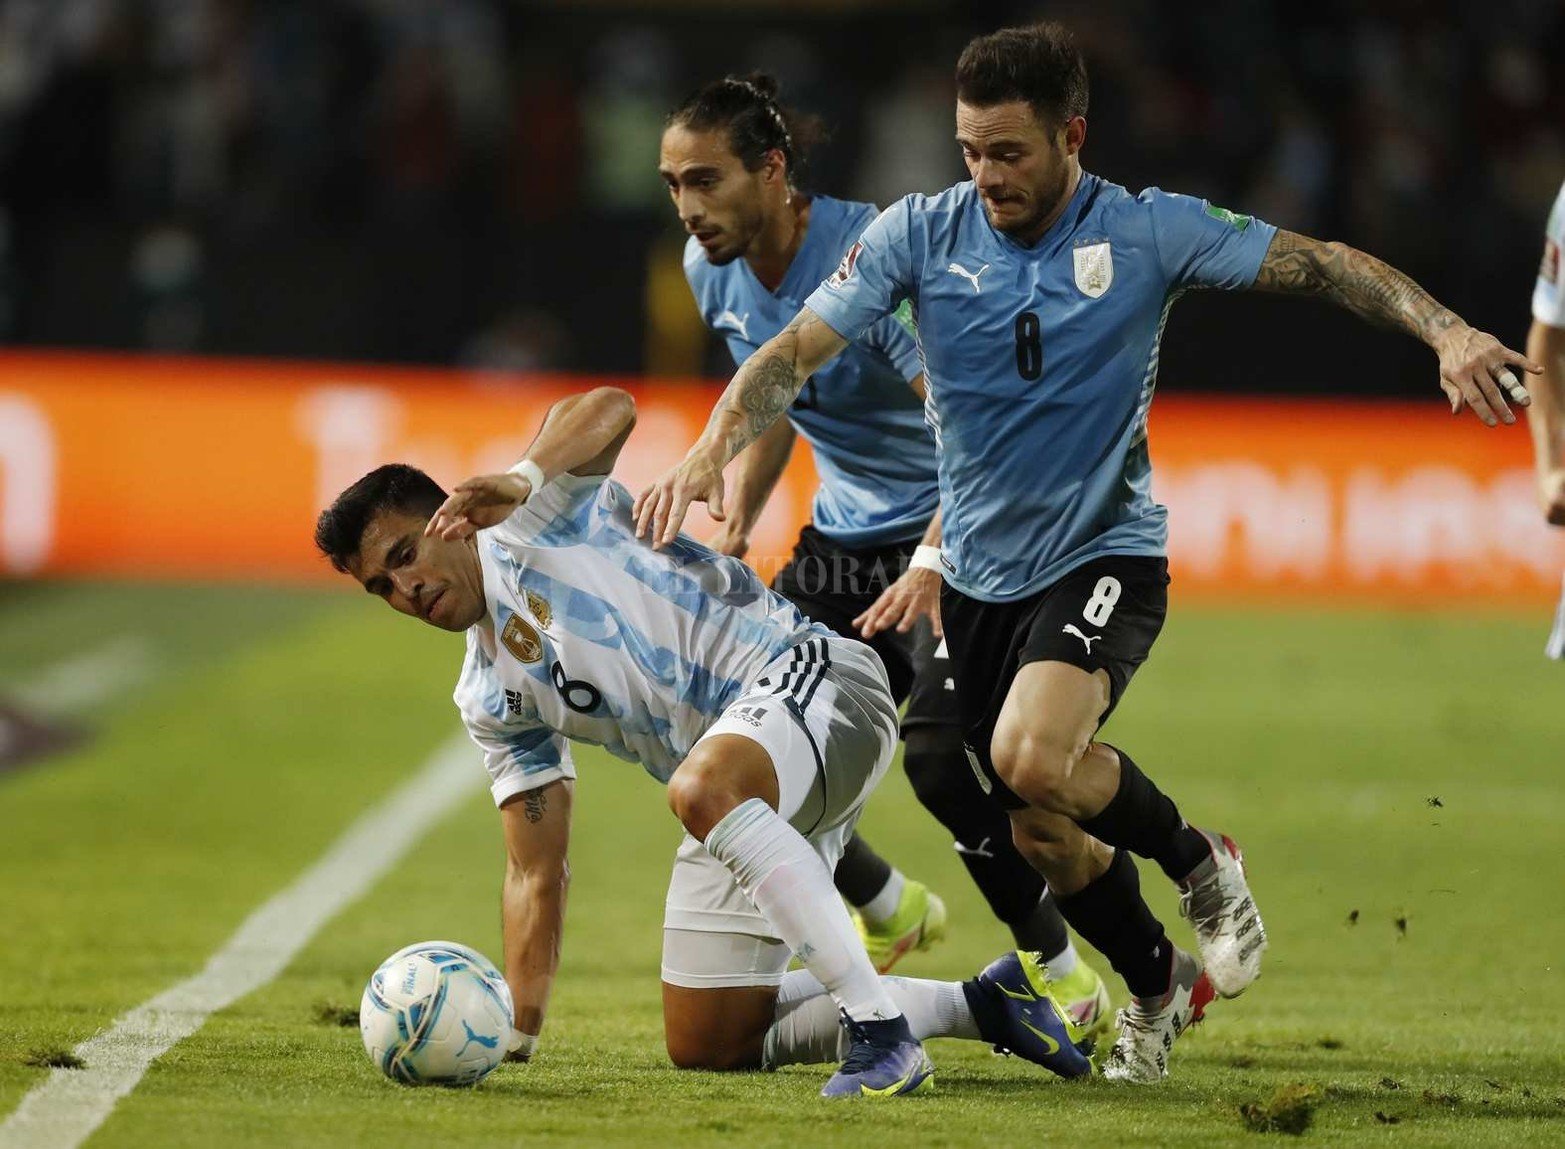 Argentino volvió a ganar (a Uruguay 1 a 0 en Montevideo) y se encamina a clasificar sin sobre salto al mundial de fútbol a disputarse en Qatar.